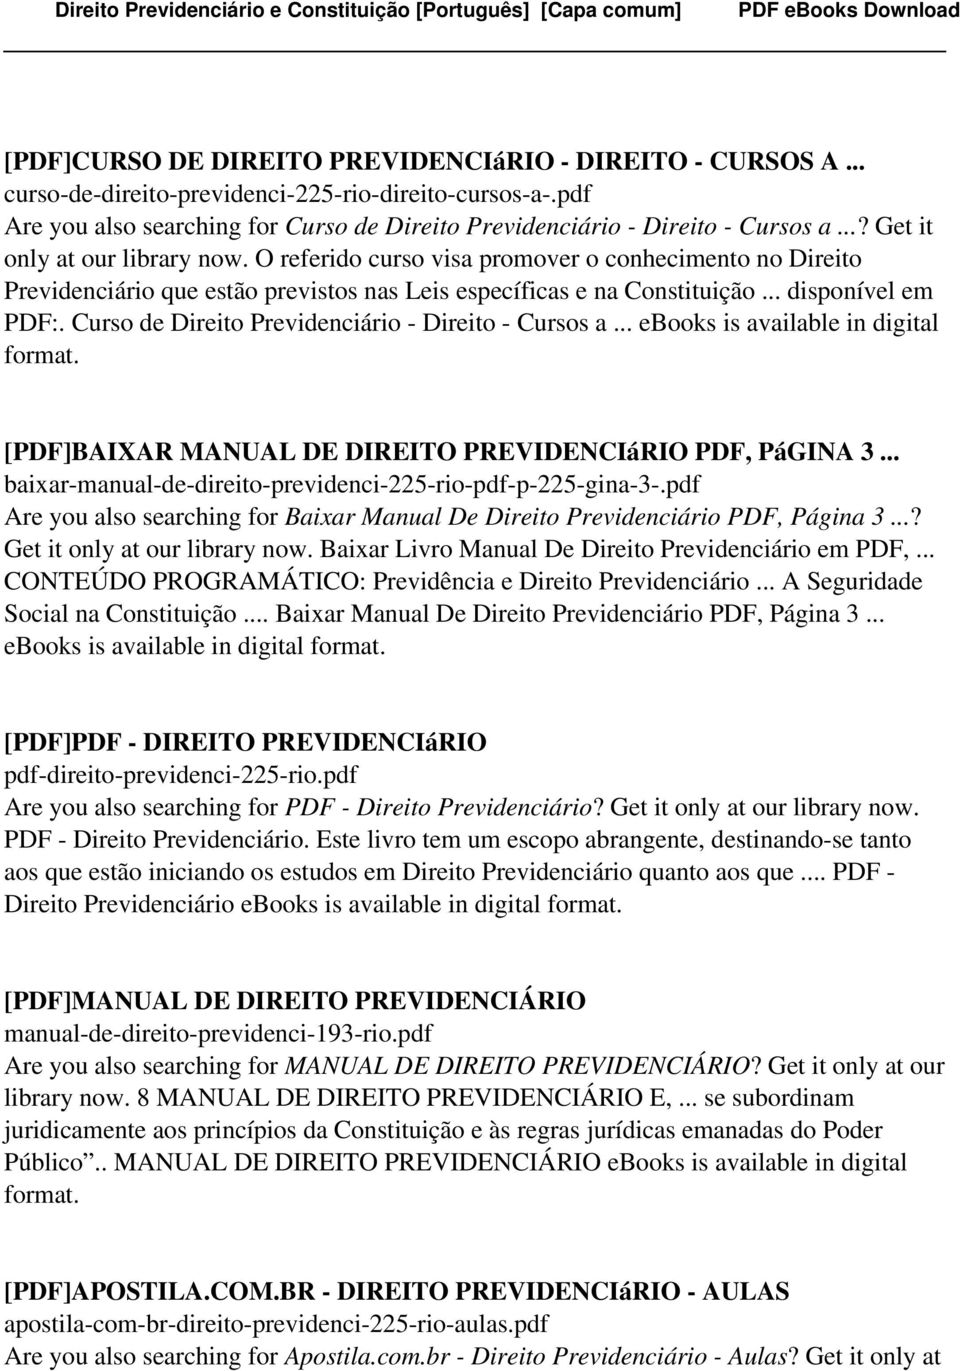 Curso de Direito Previdenciário - Direito - Cursos a... ebooks is available in digital [PDF]BAIXAR MANUAL DE DIREITO PREVIDENCIáRIO PDF, PáGINA 3.